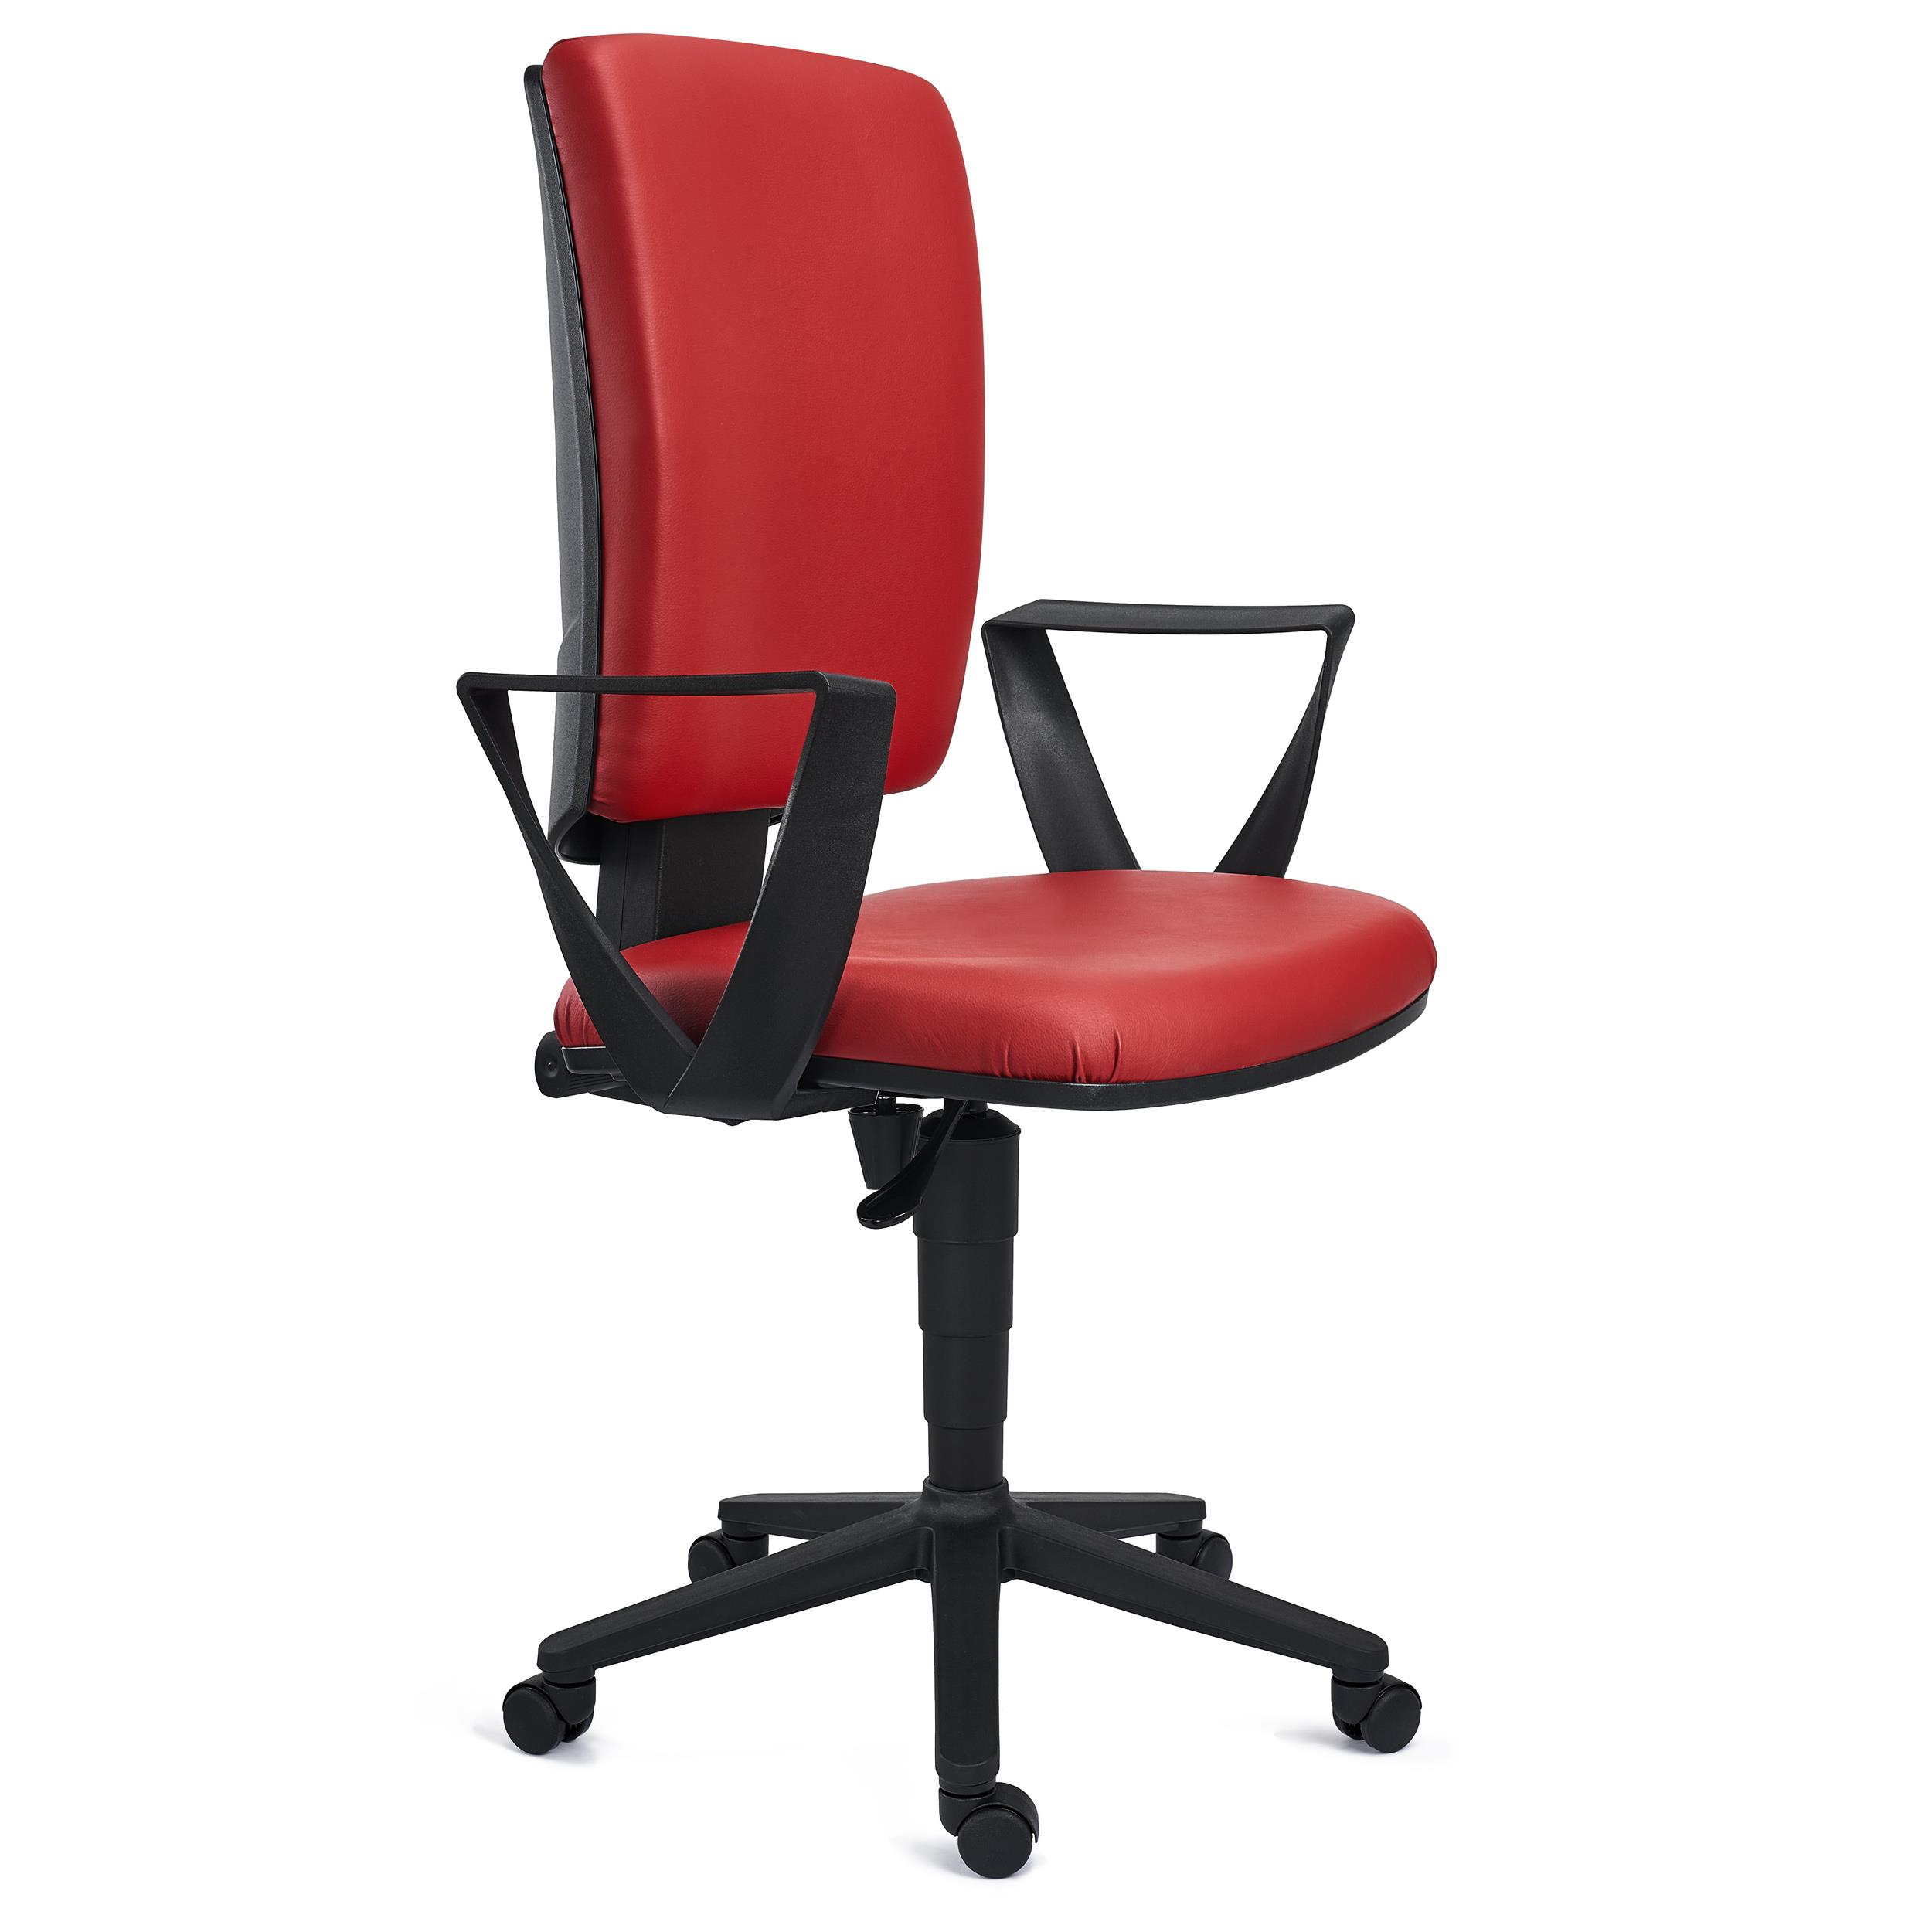 Bürostuhl ATLAS LEDER, verstellbare Rückenlehne, dicke Polsterung, Farbe Rot